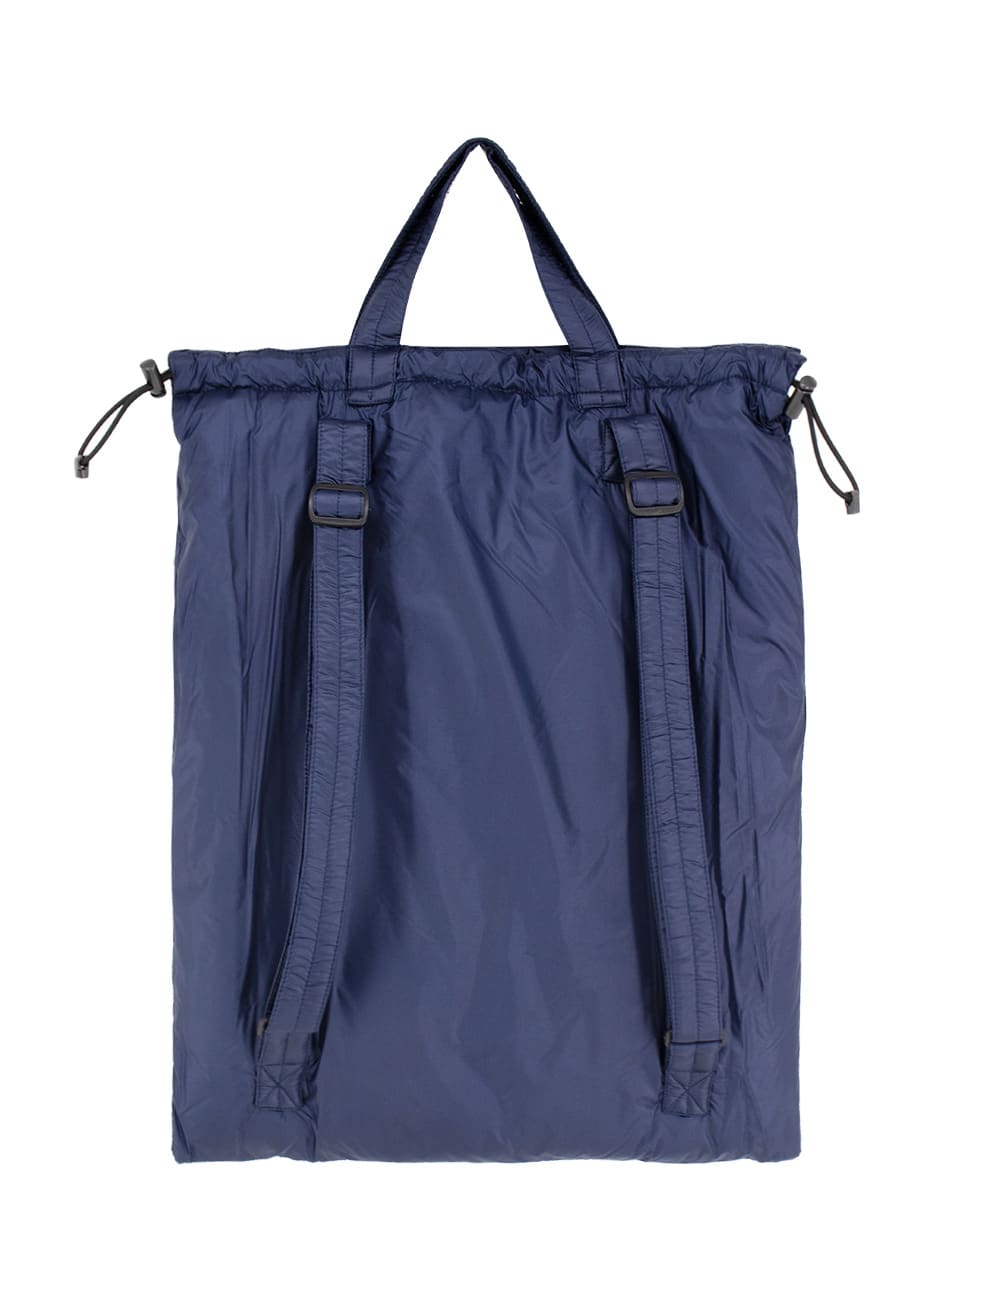 Shop Aspesi Bag In Blue